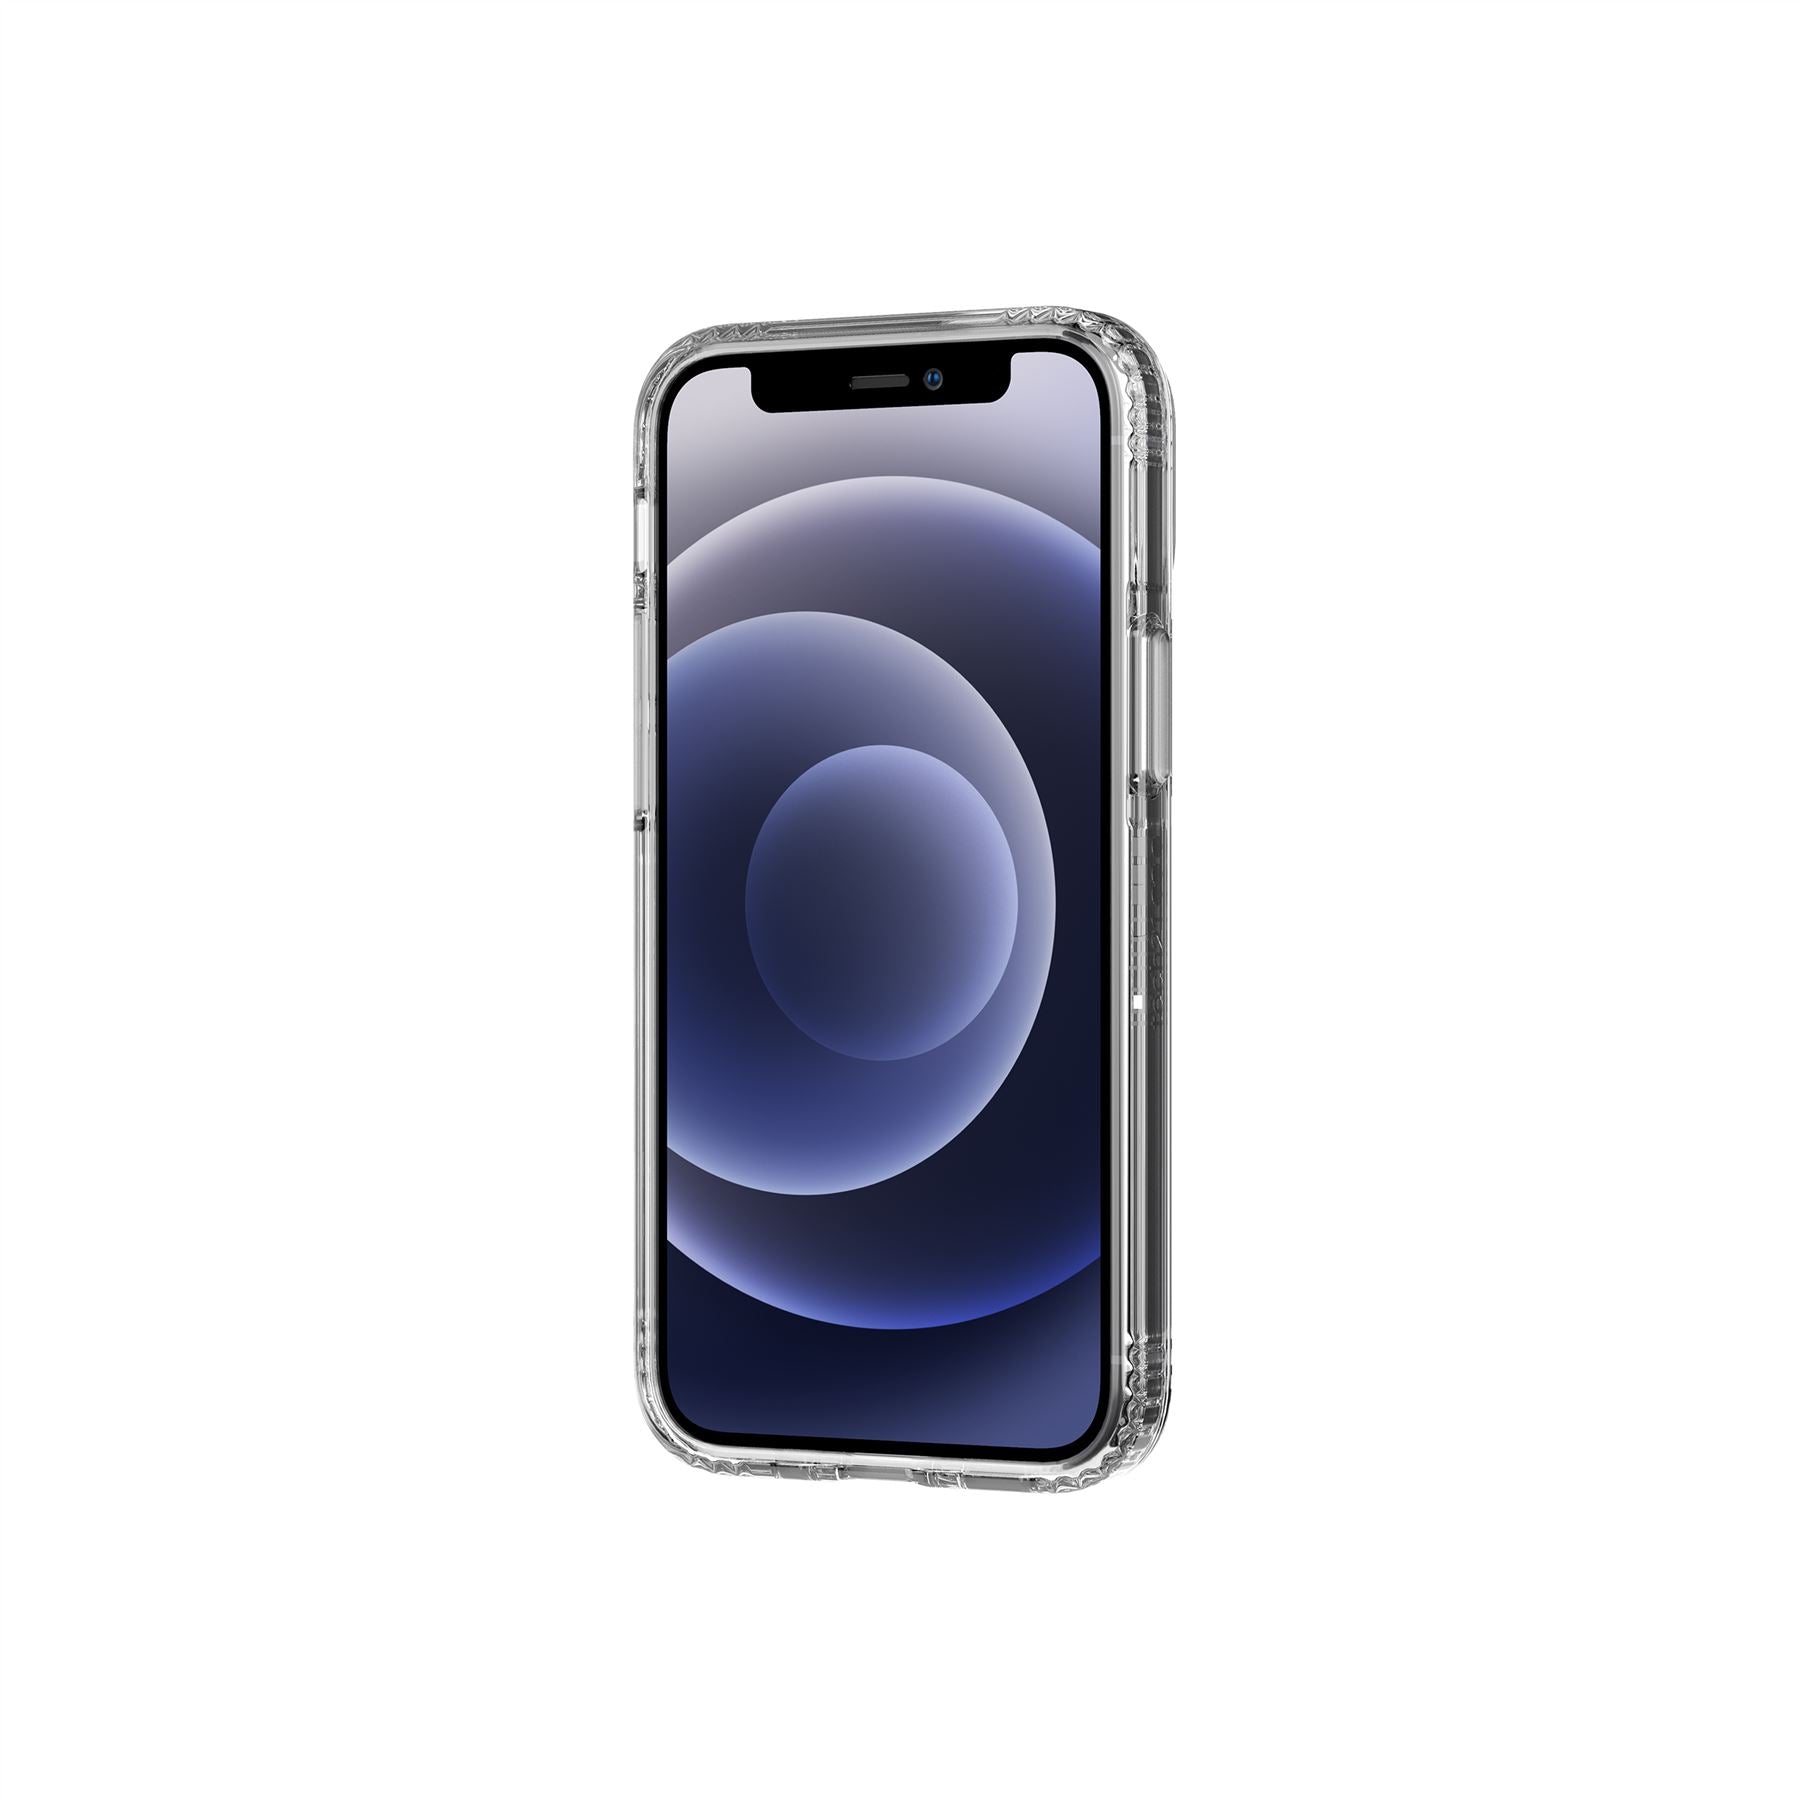 Clear iPhone 12 Mini Case